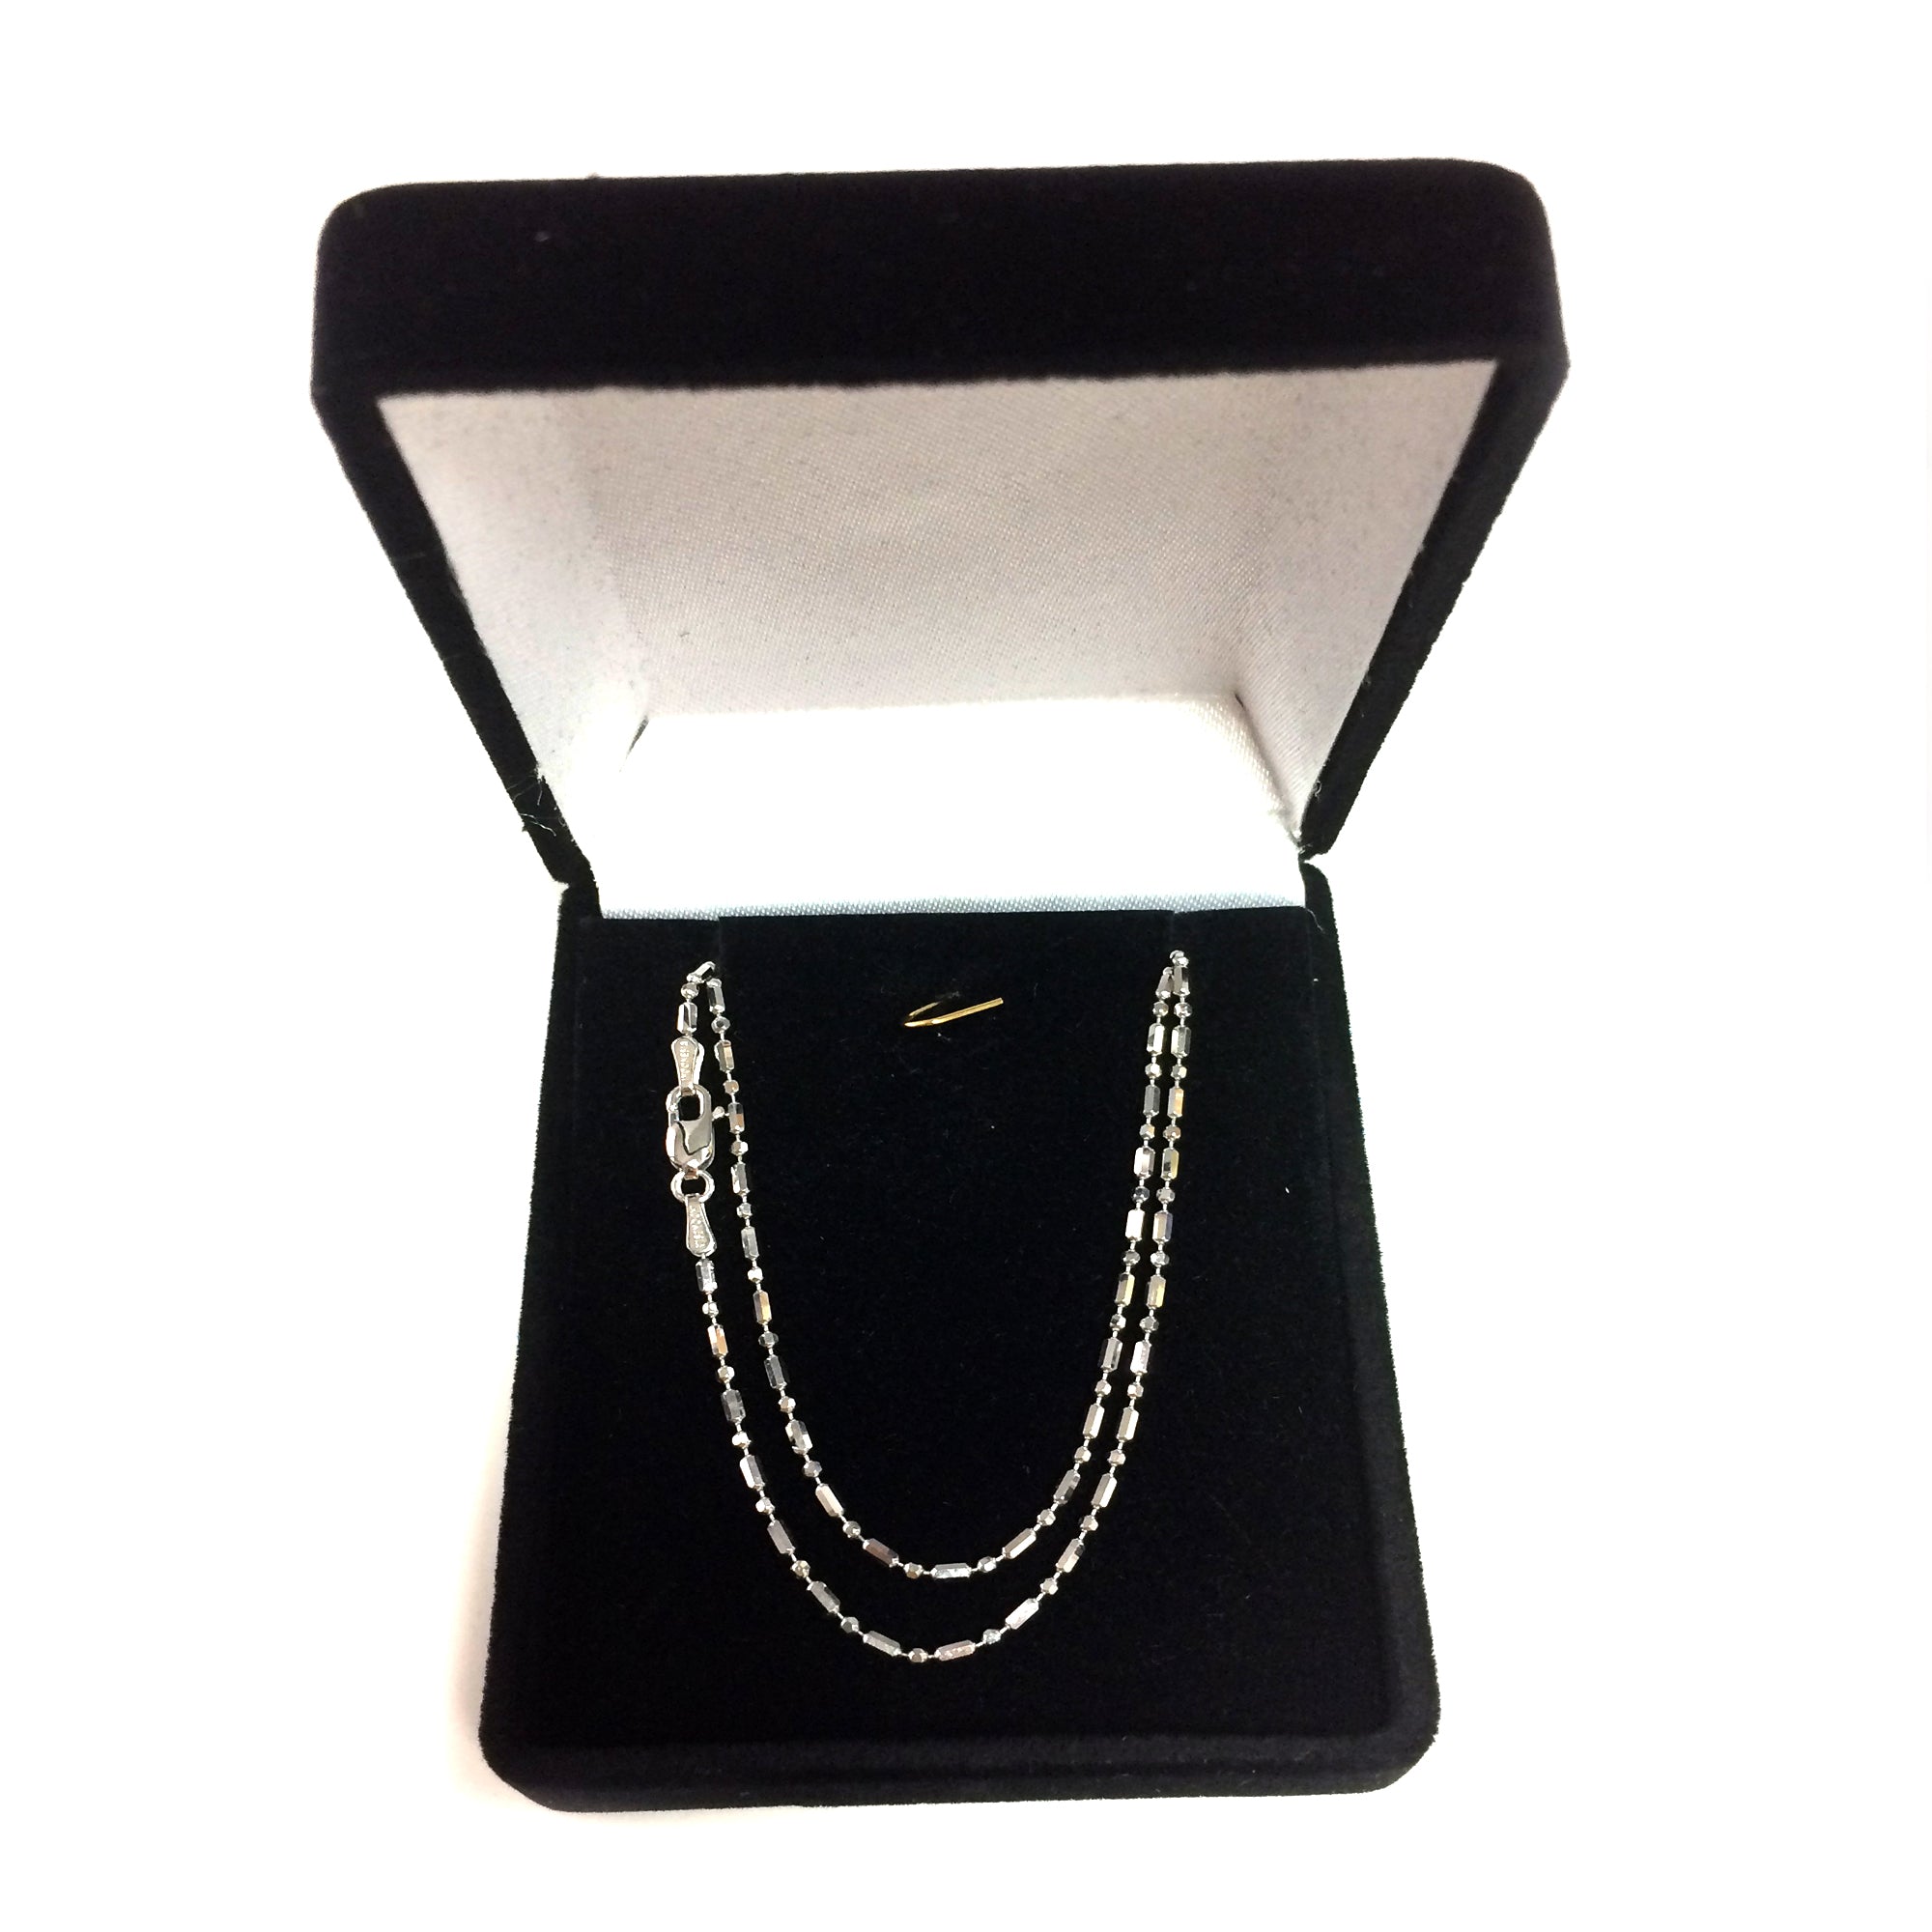 Collar de cadena con cuentas de oro blanco de 14 quilates con corte de diamante, joyería fina de diseño de 1,5 mm para hombres y mujeres